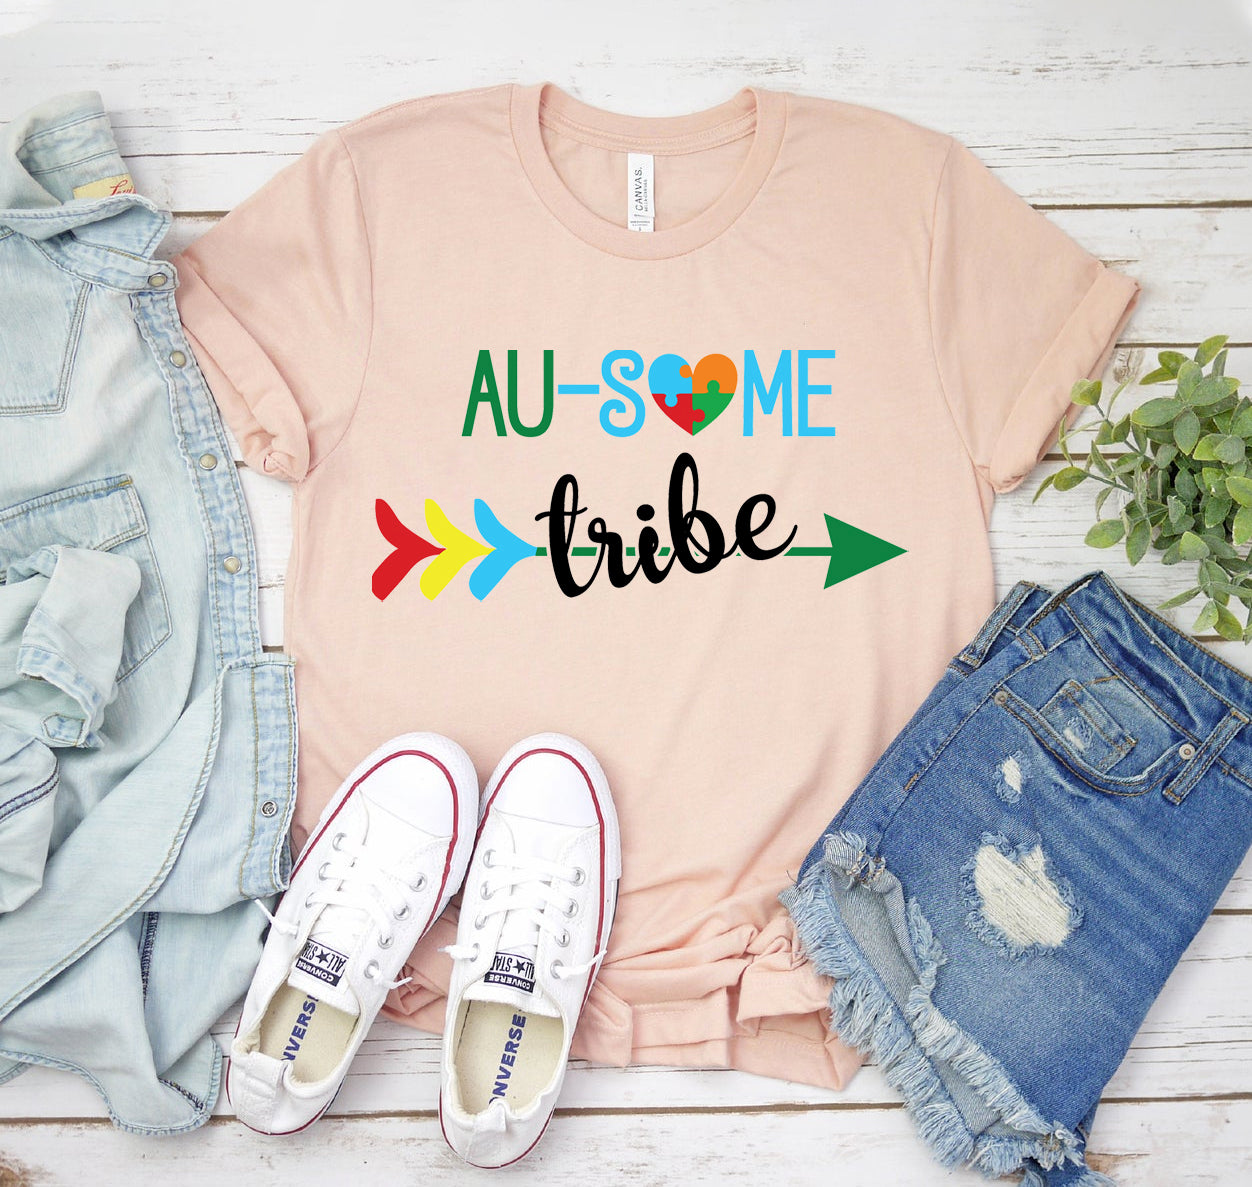 Au-some Tribe T-shirt